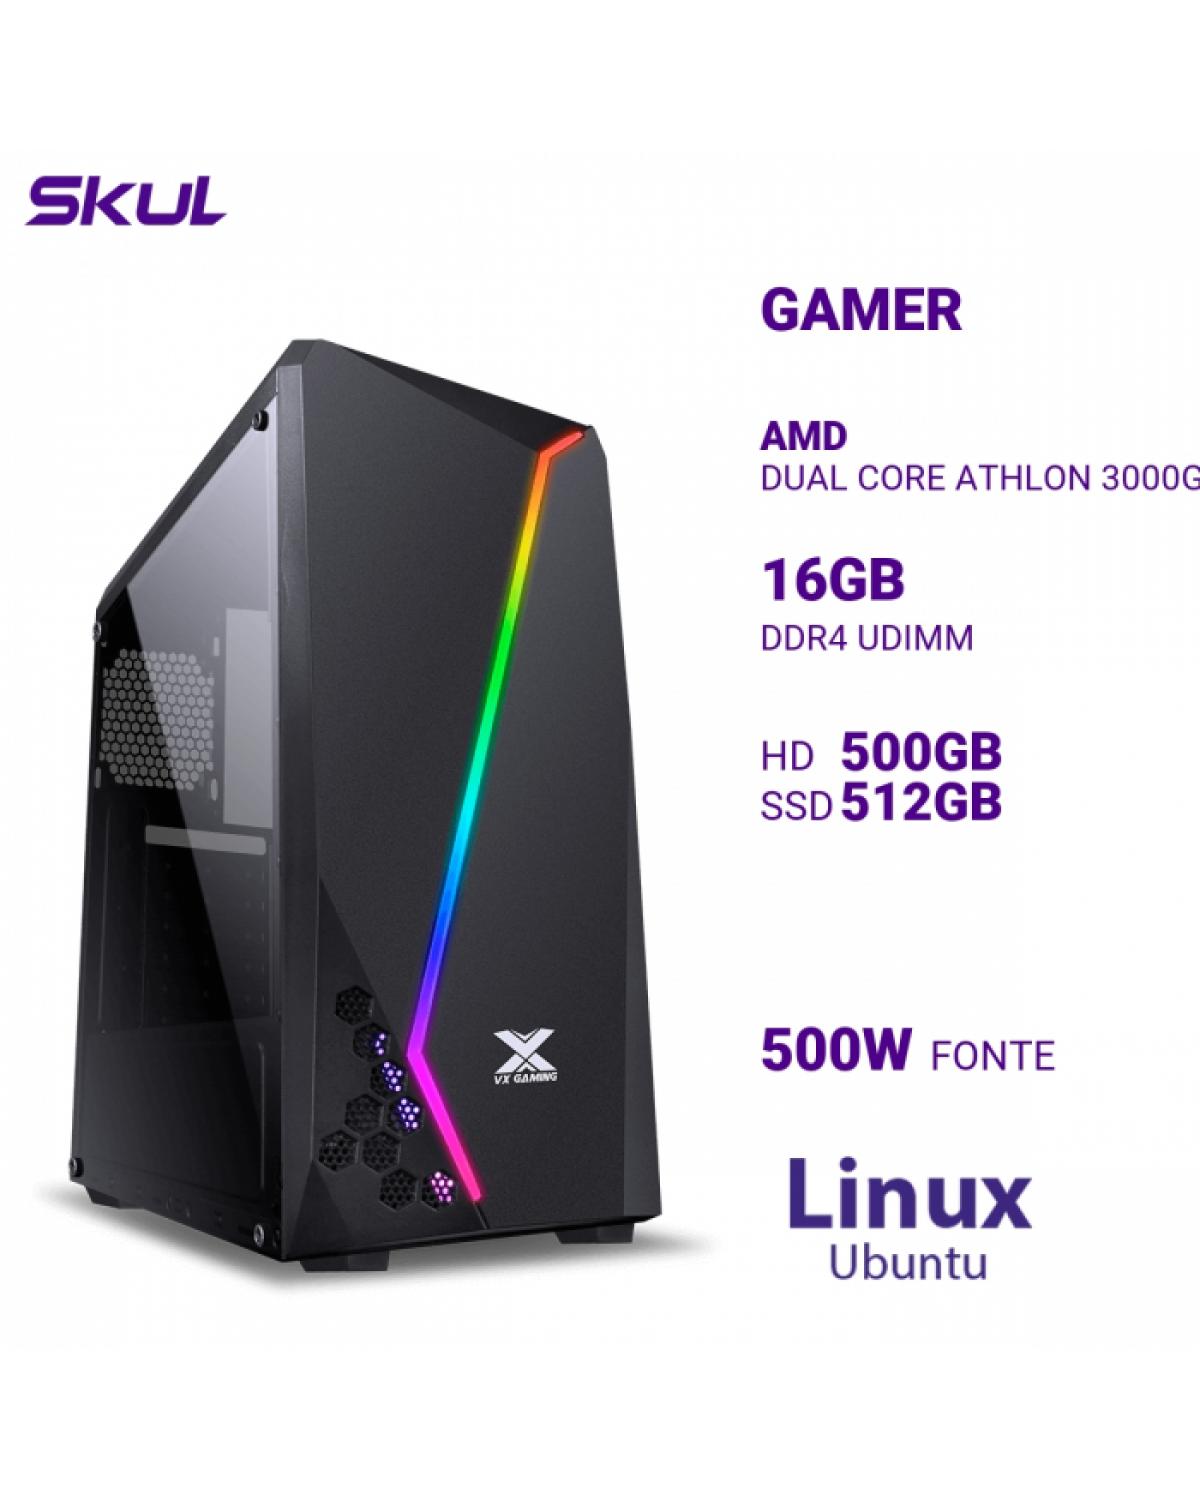 COMPUTADOR GAMER 1000 DUAL CORE ATHLON 3000G 3.50GHZ MEM 16GB DDR4 HD 500GB SSD 512GB FONTE 500W LINUX